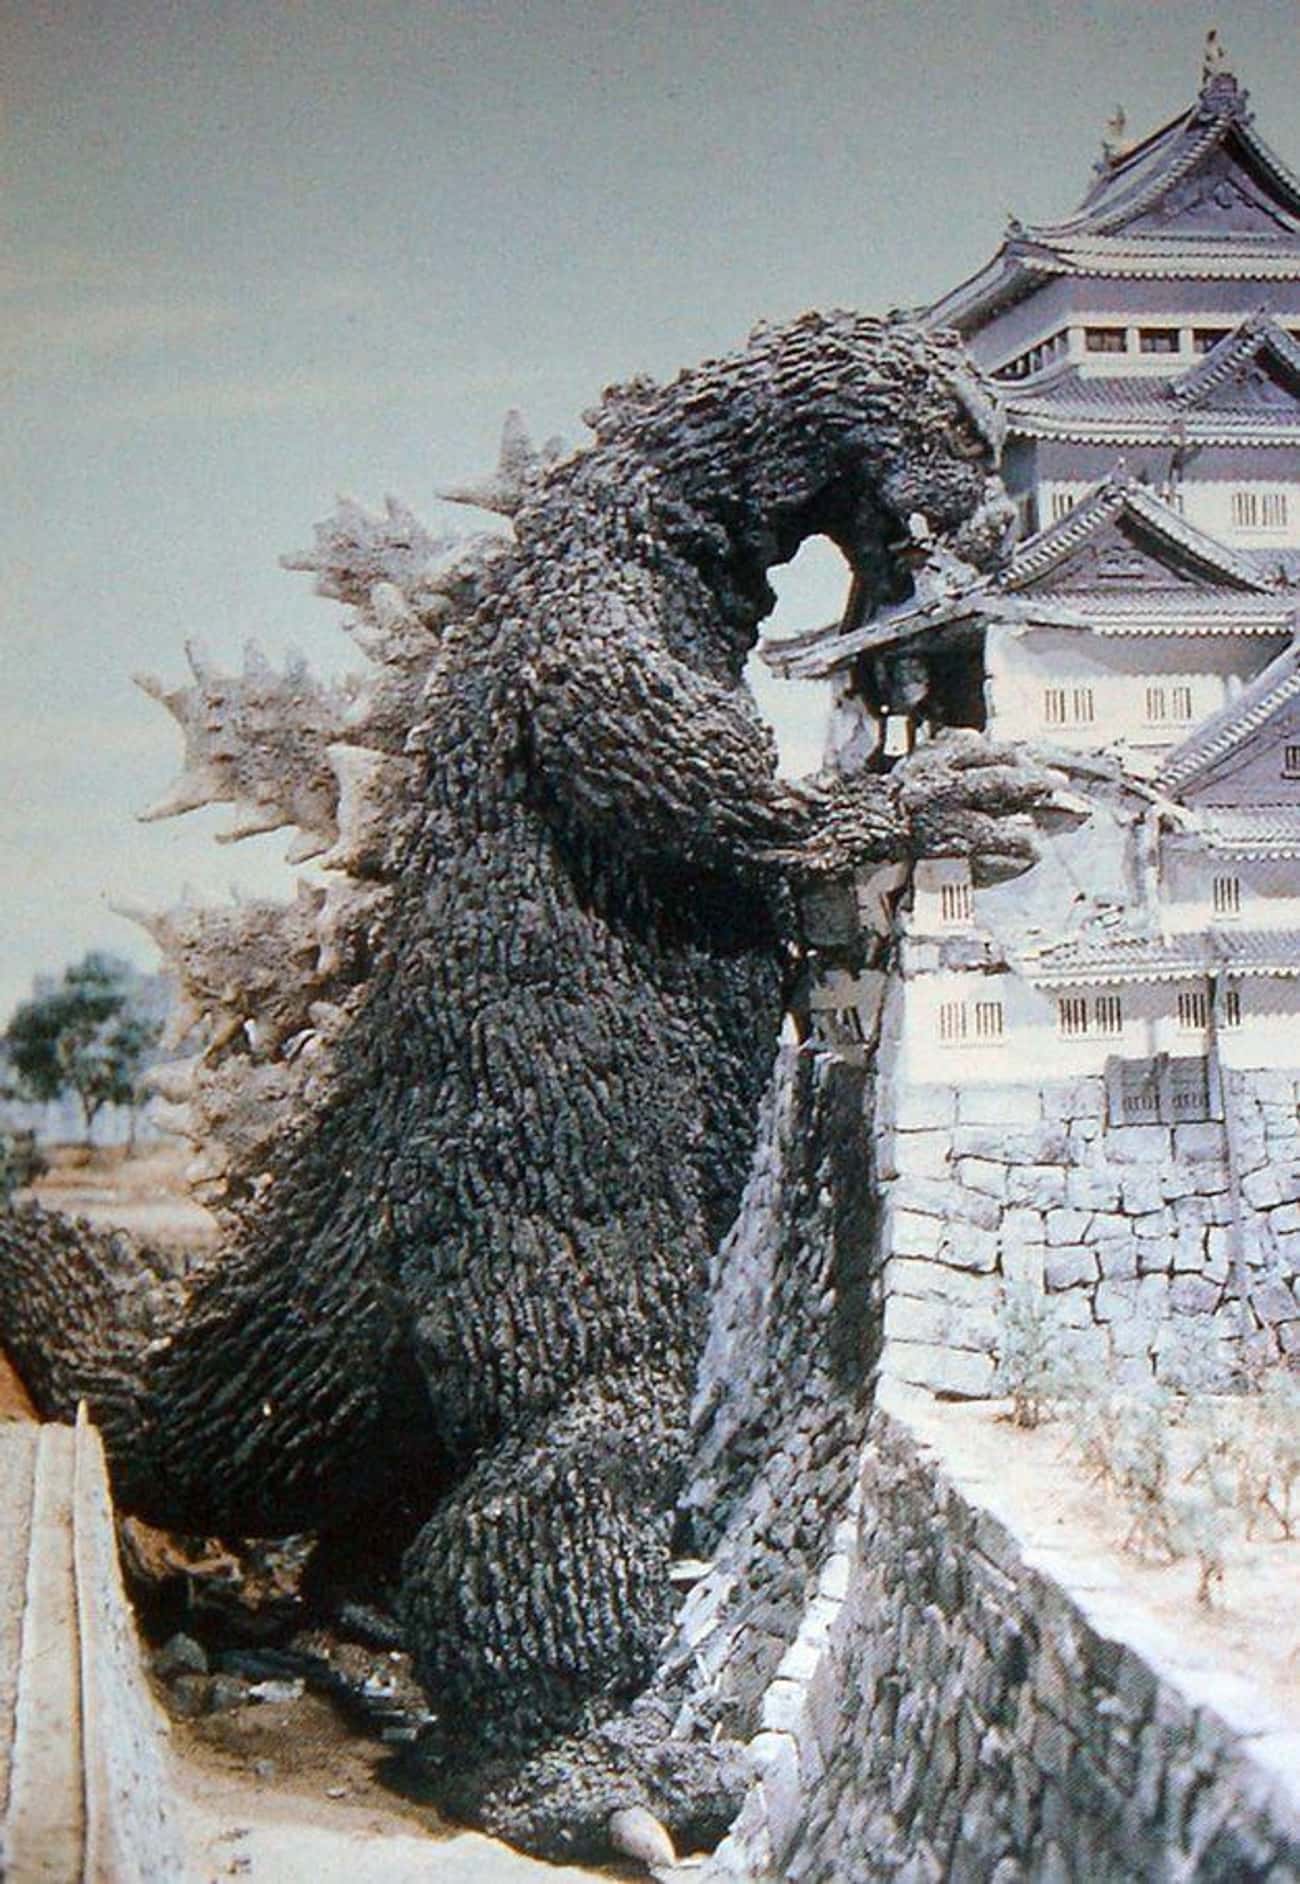 'Mothra Vs. Godzilla’ In 1964